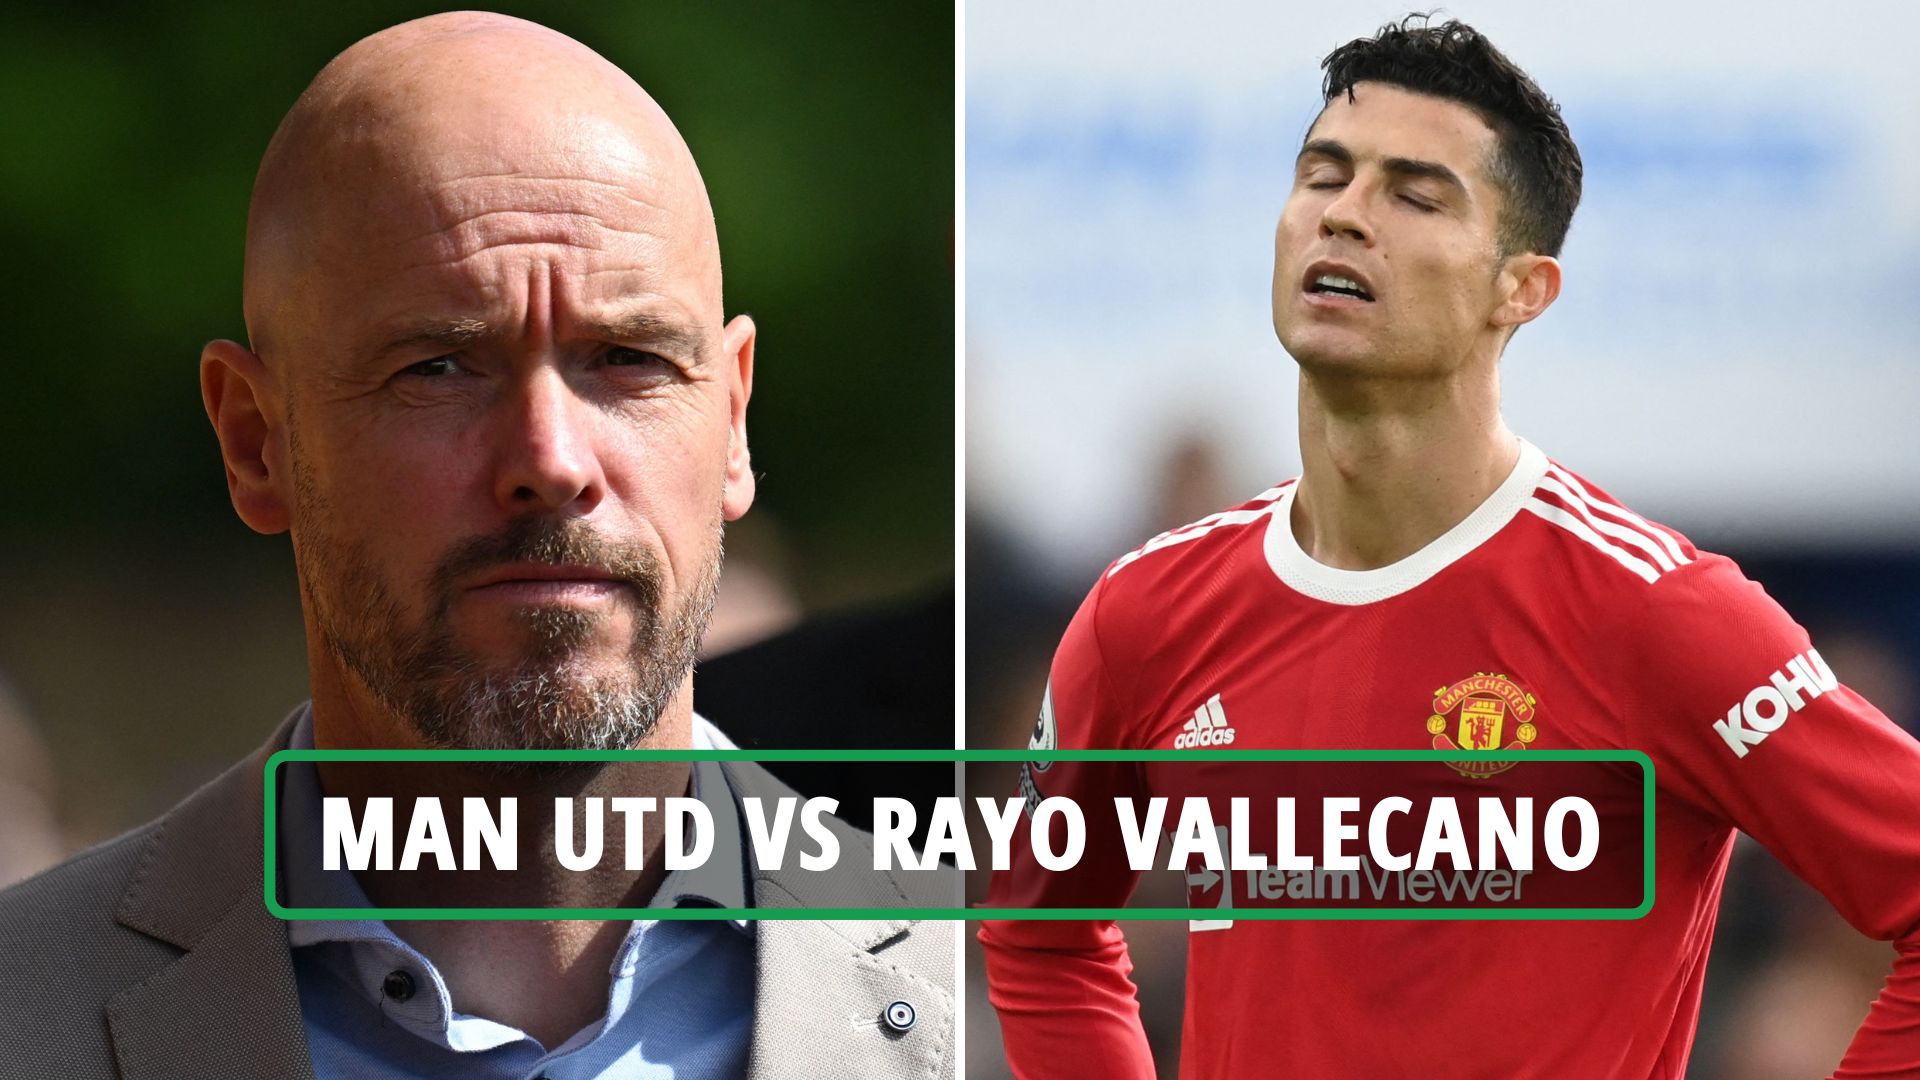 مشاهدة مباراة مانشستر يونايتد و رايو فاليكانو بث مباشر 31-07-2022 Manchester United vs Rayo Vallecano